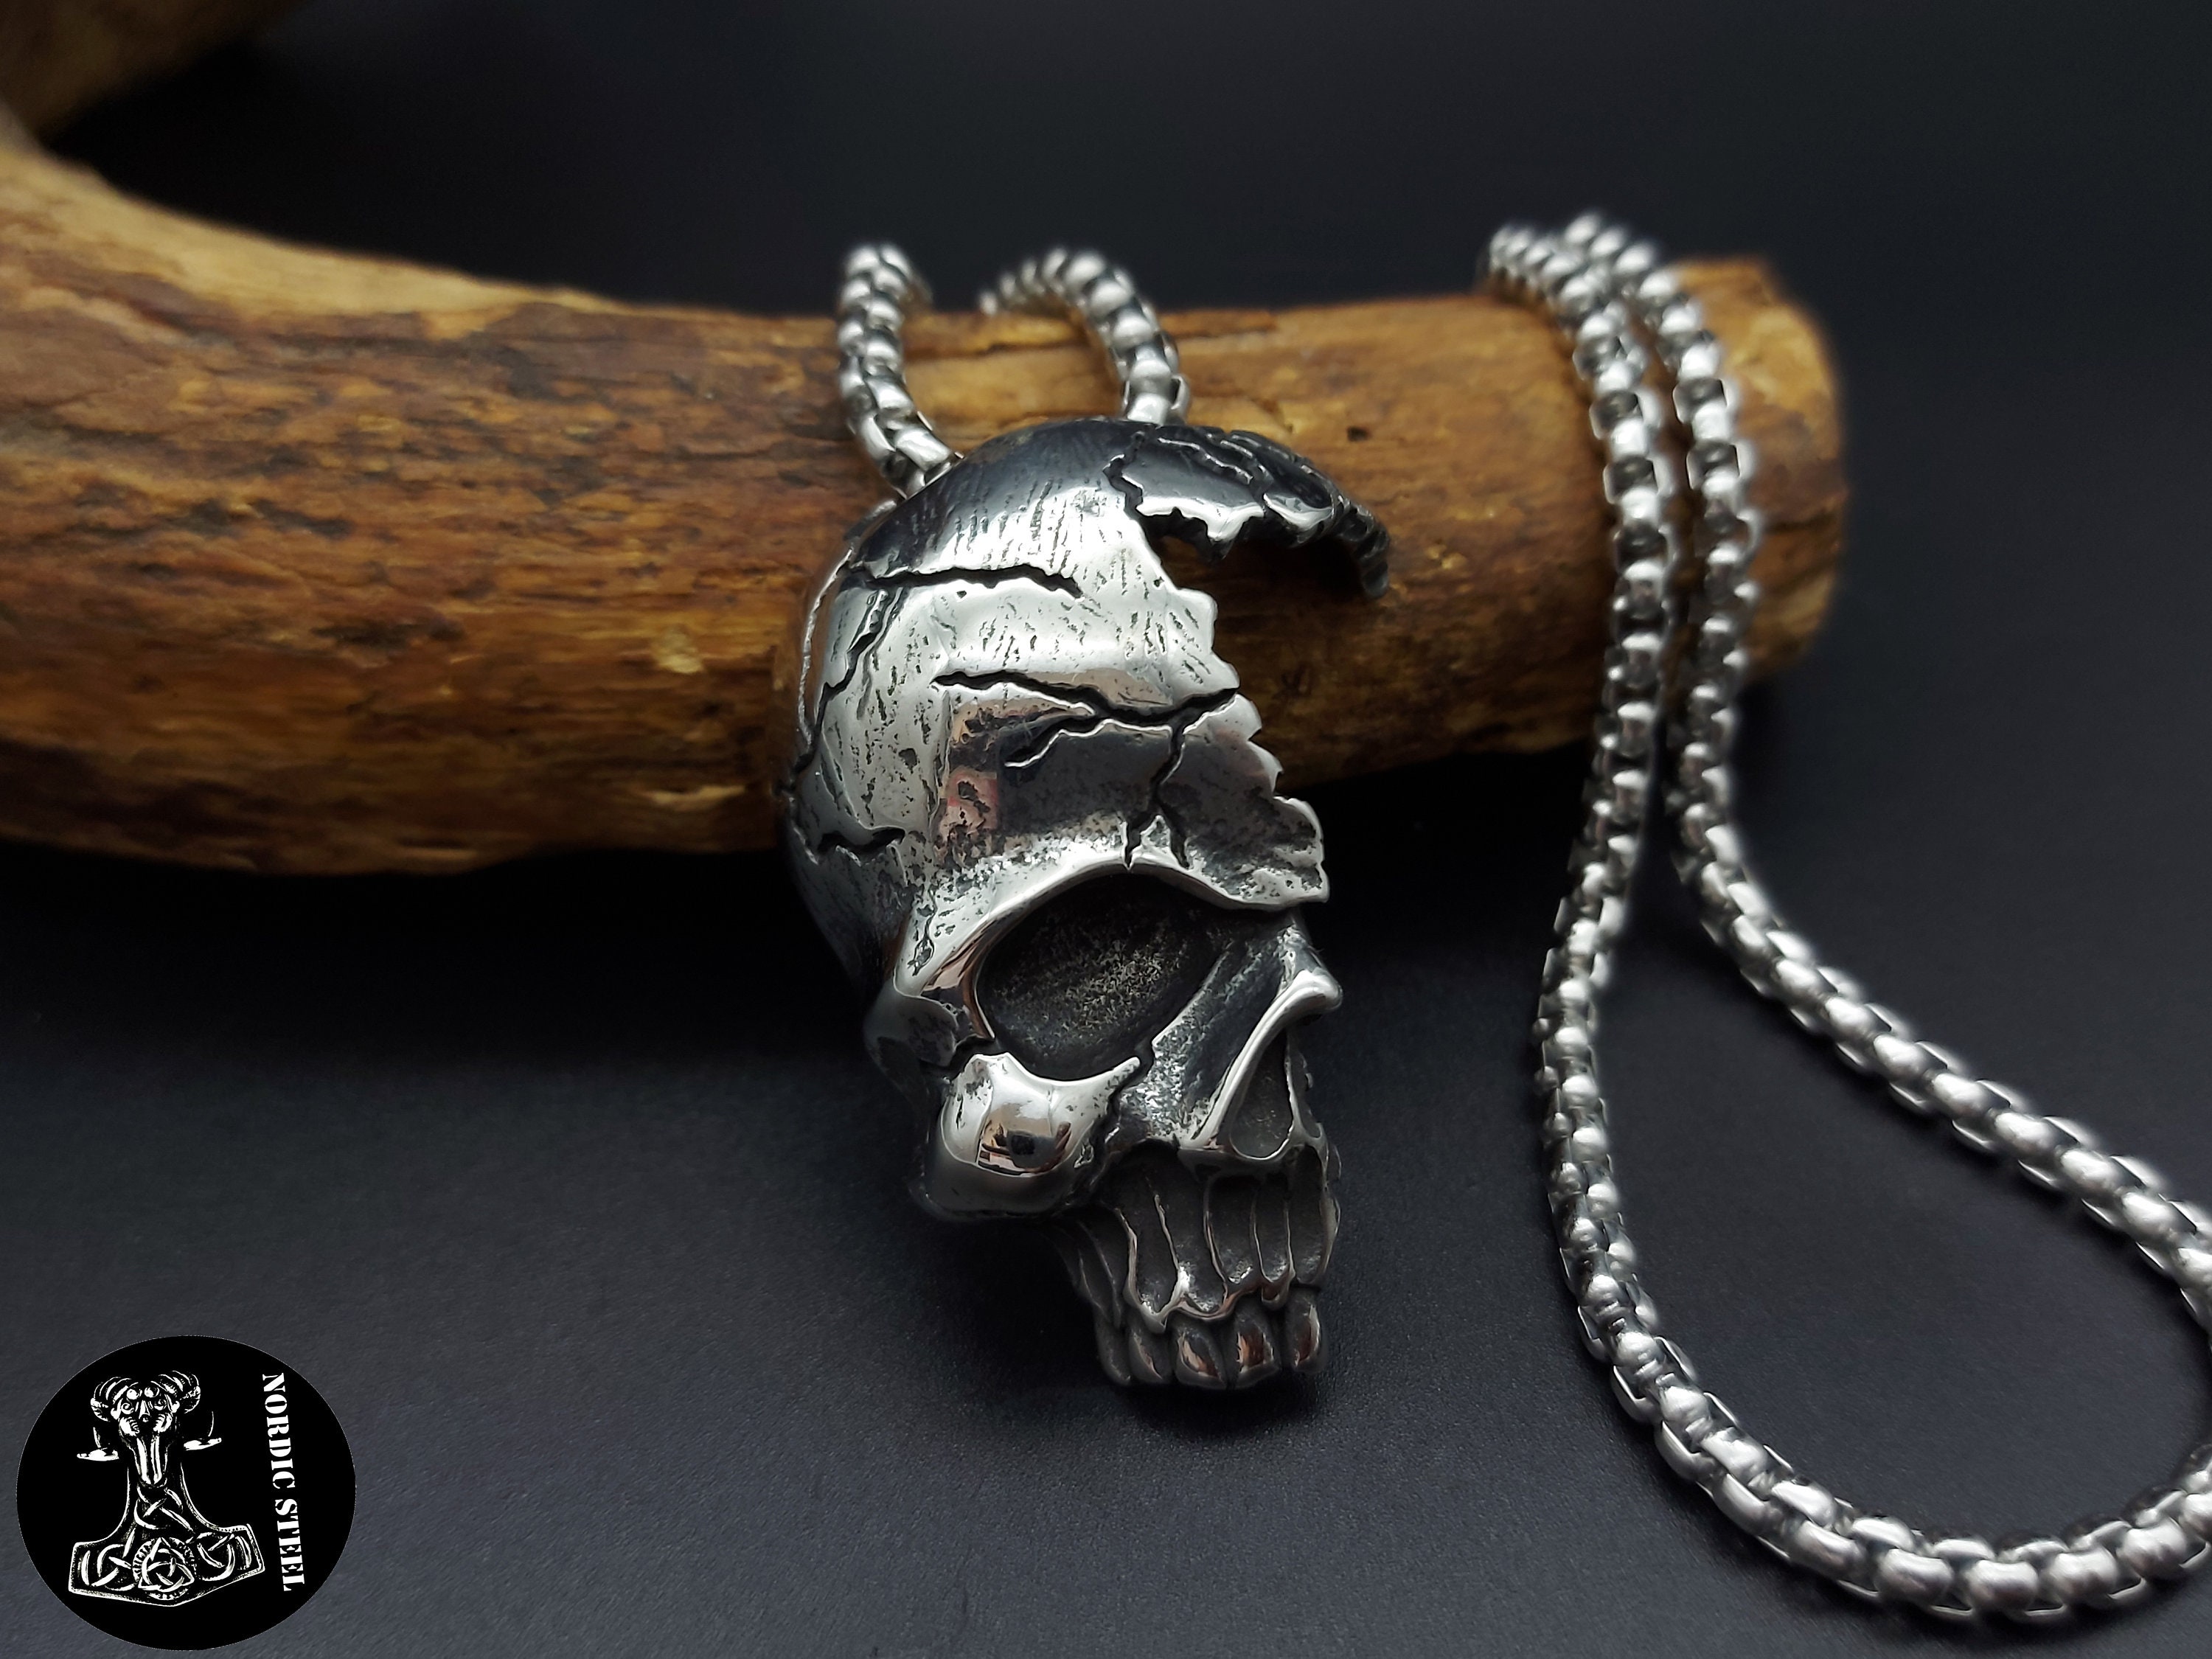 Totenkopf Skull groß filligran Anhänger für Kette Echt Silber 38 x 18 mm  VII-40 - Trachtenecke